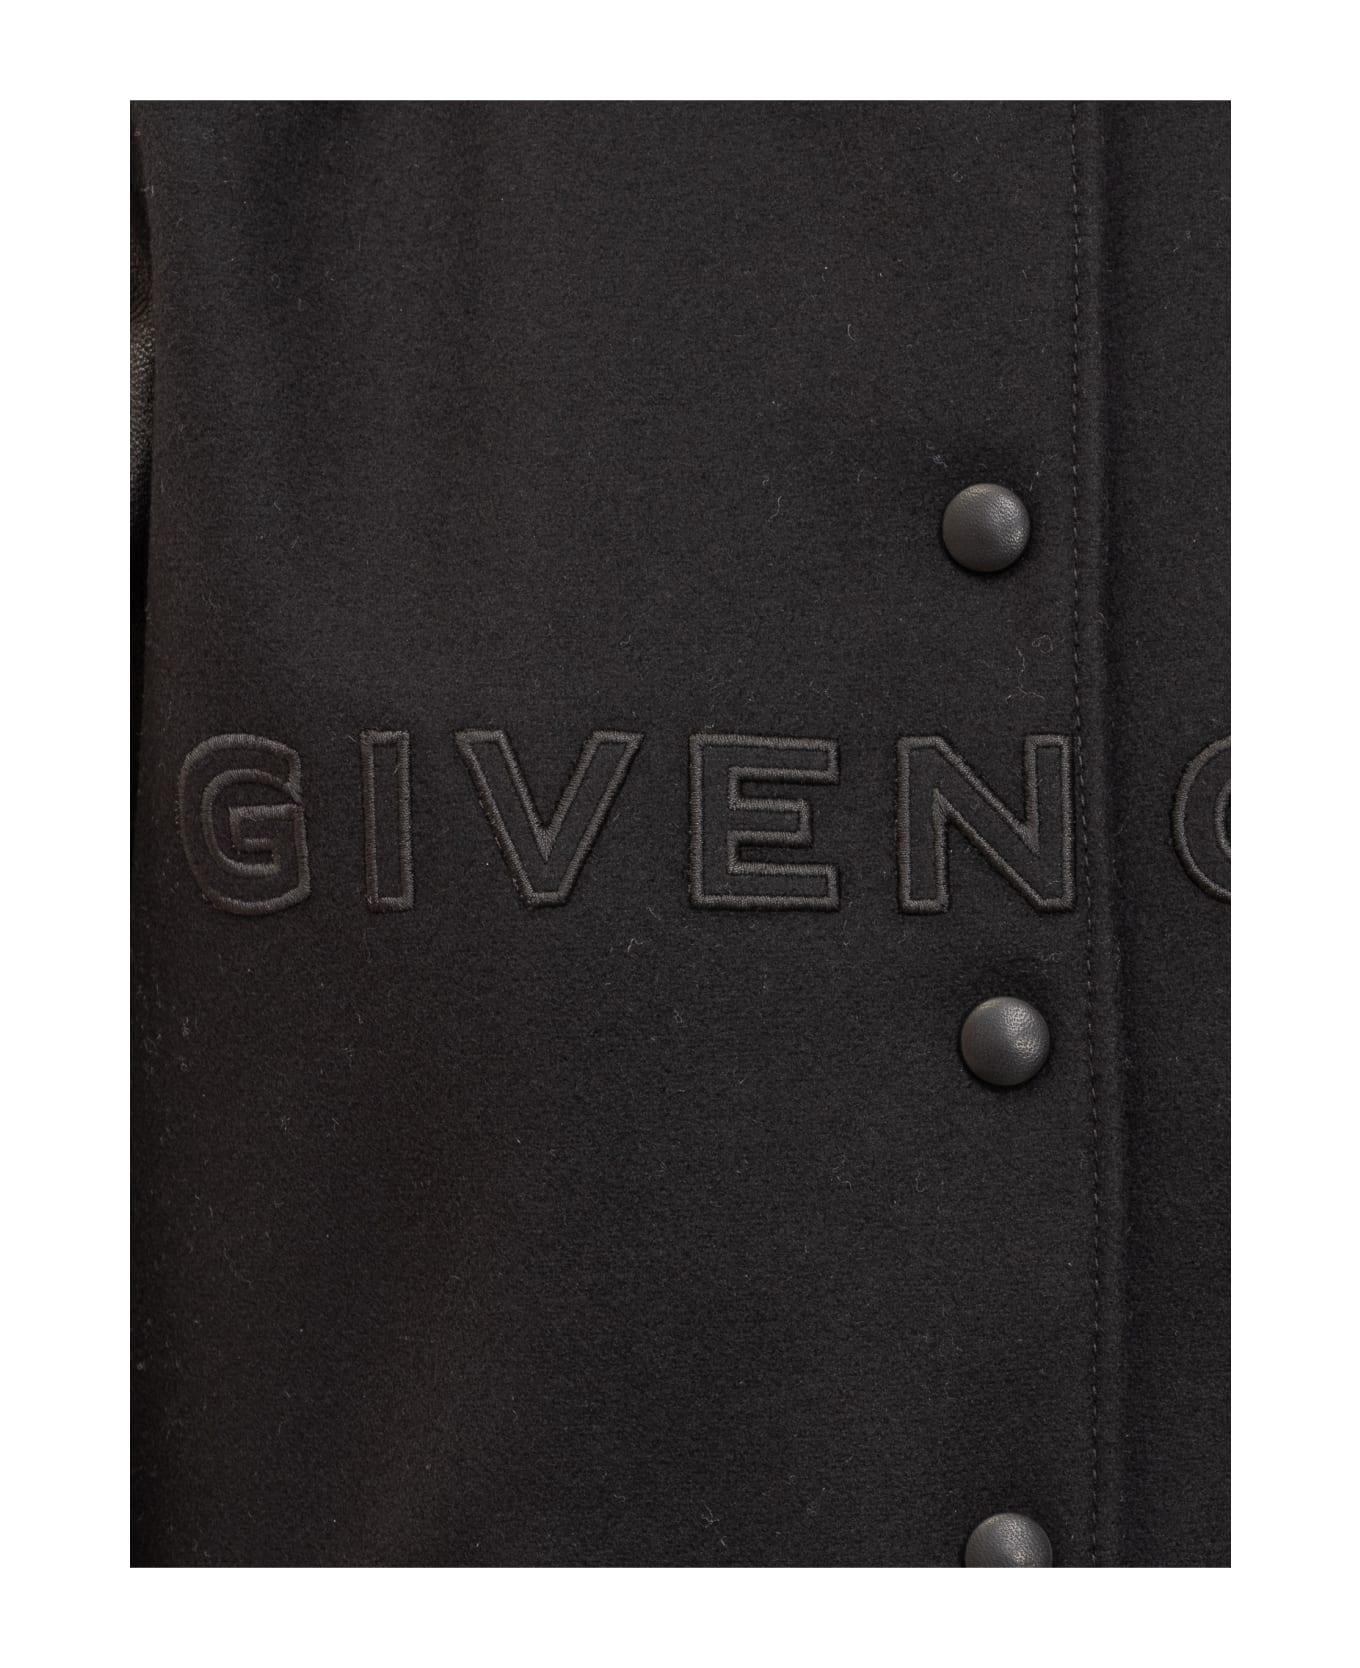 Givenchy Cropped Varsity Jacket - Black